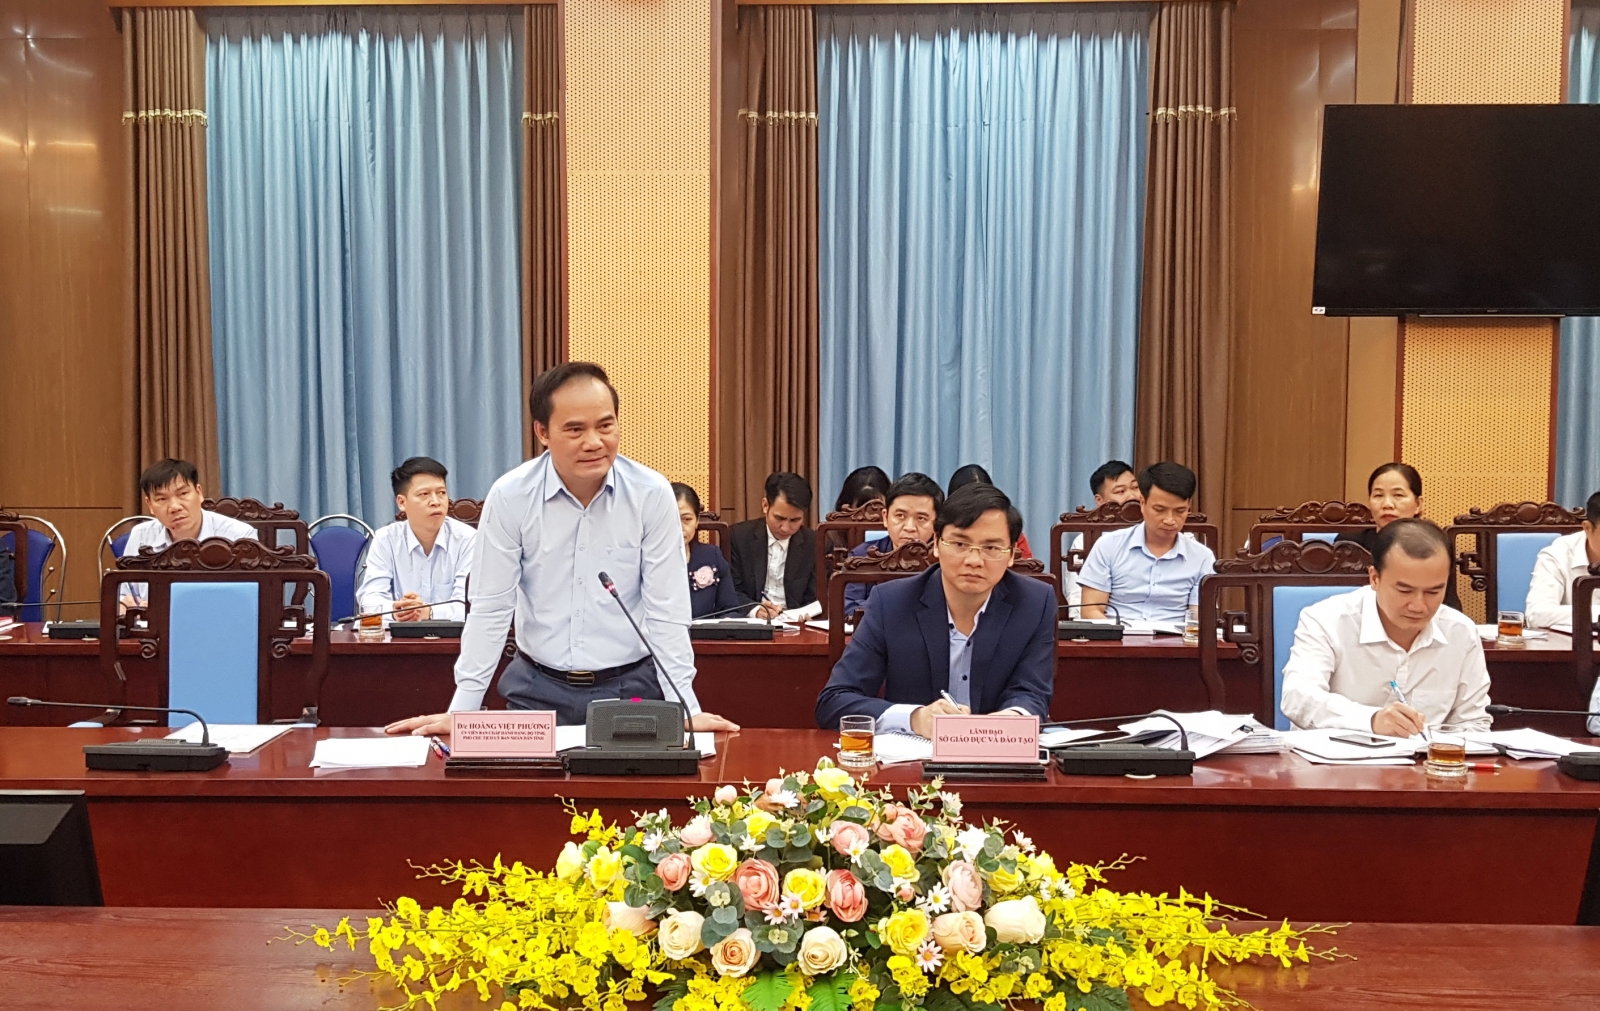 Thứ trưởng Nguyễn Hữu Độ dự giờ, triển khai chương trình phổ thông mới ở Tuyên Quang - Ảnh minh hoạ 2